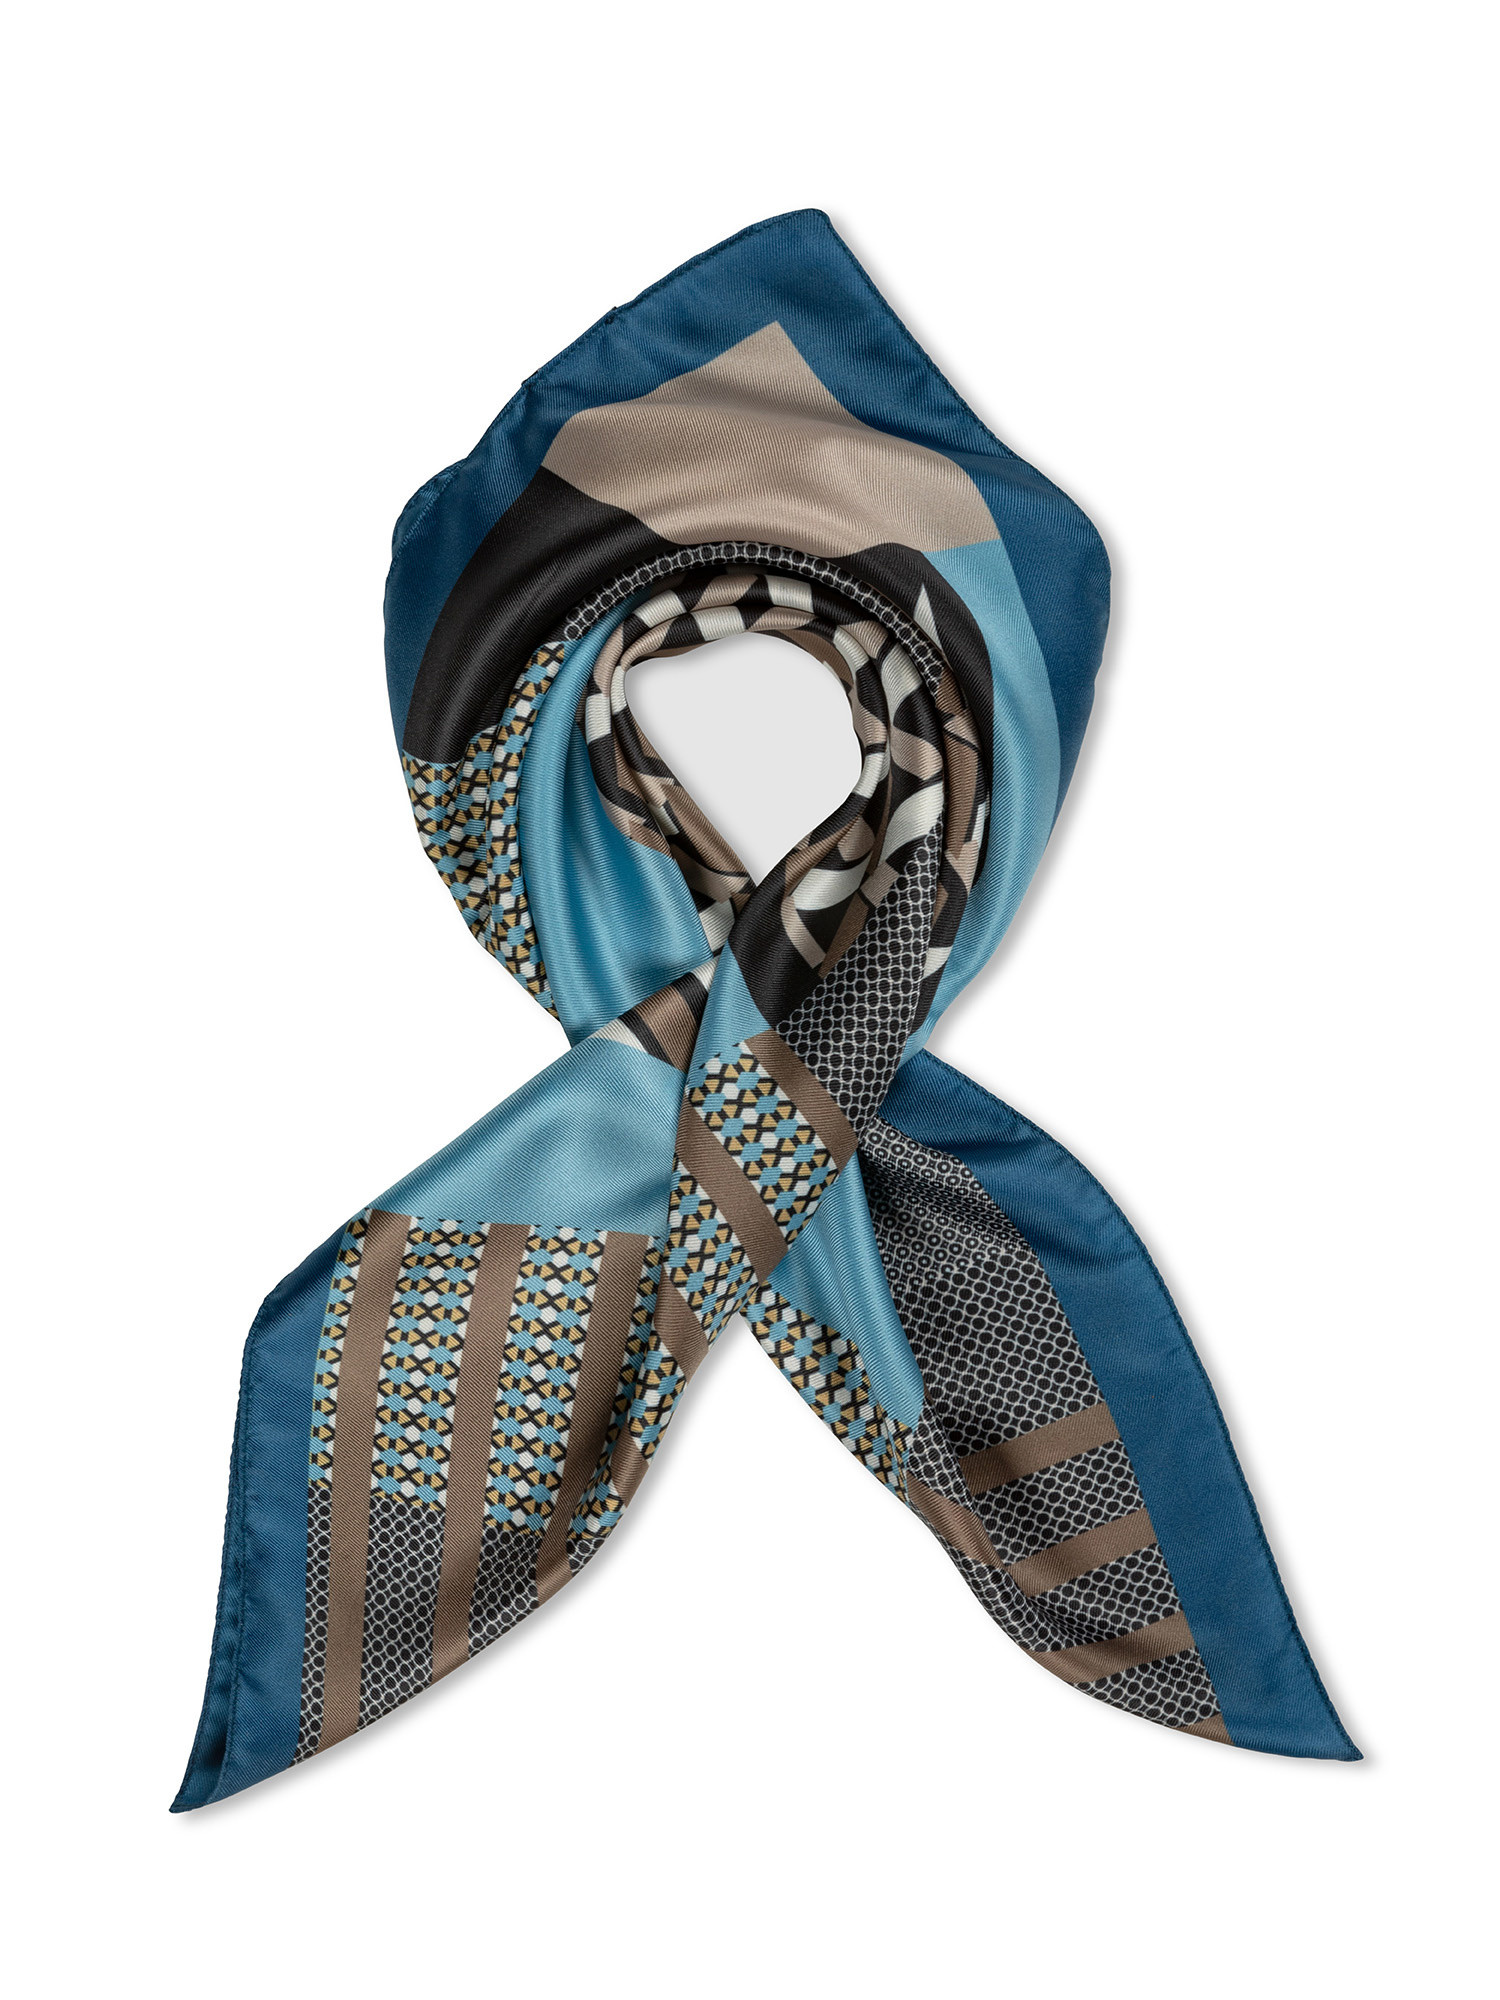 Koan - Patterned scarf, Light Blue, large image number 0